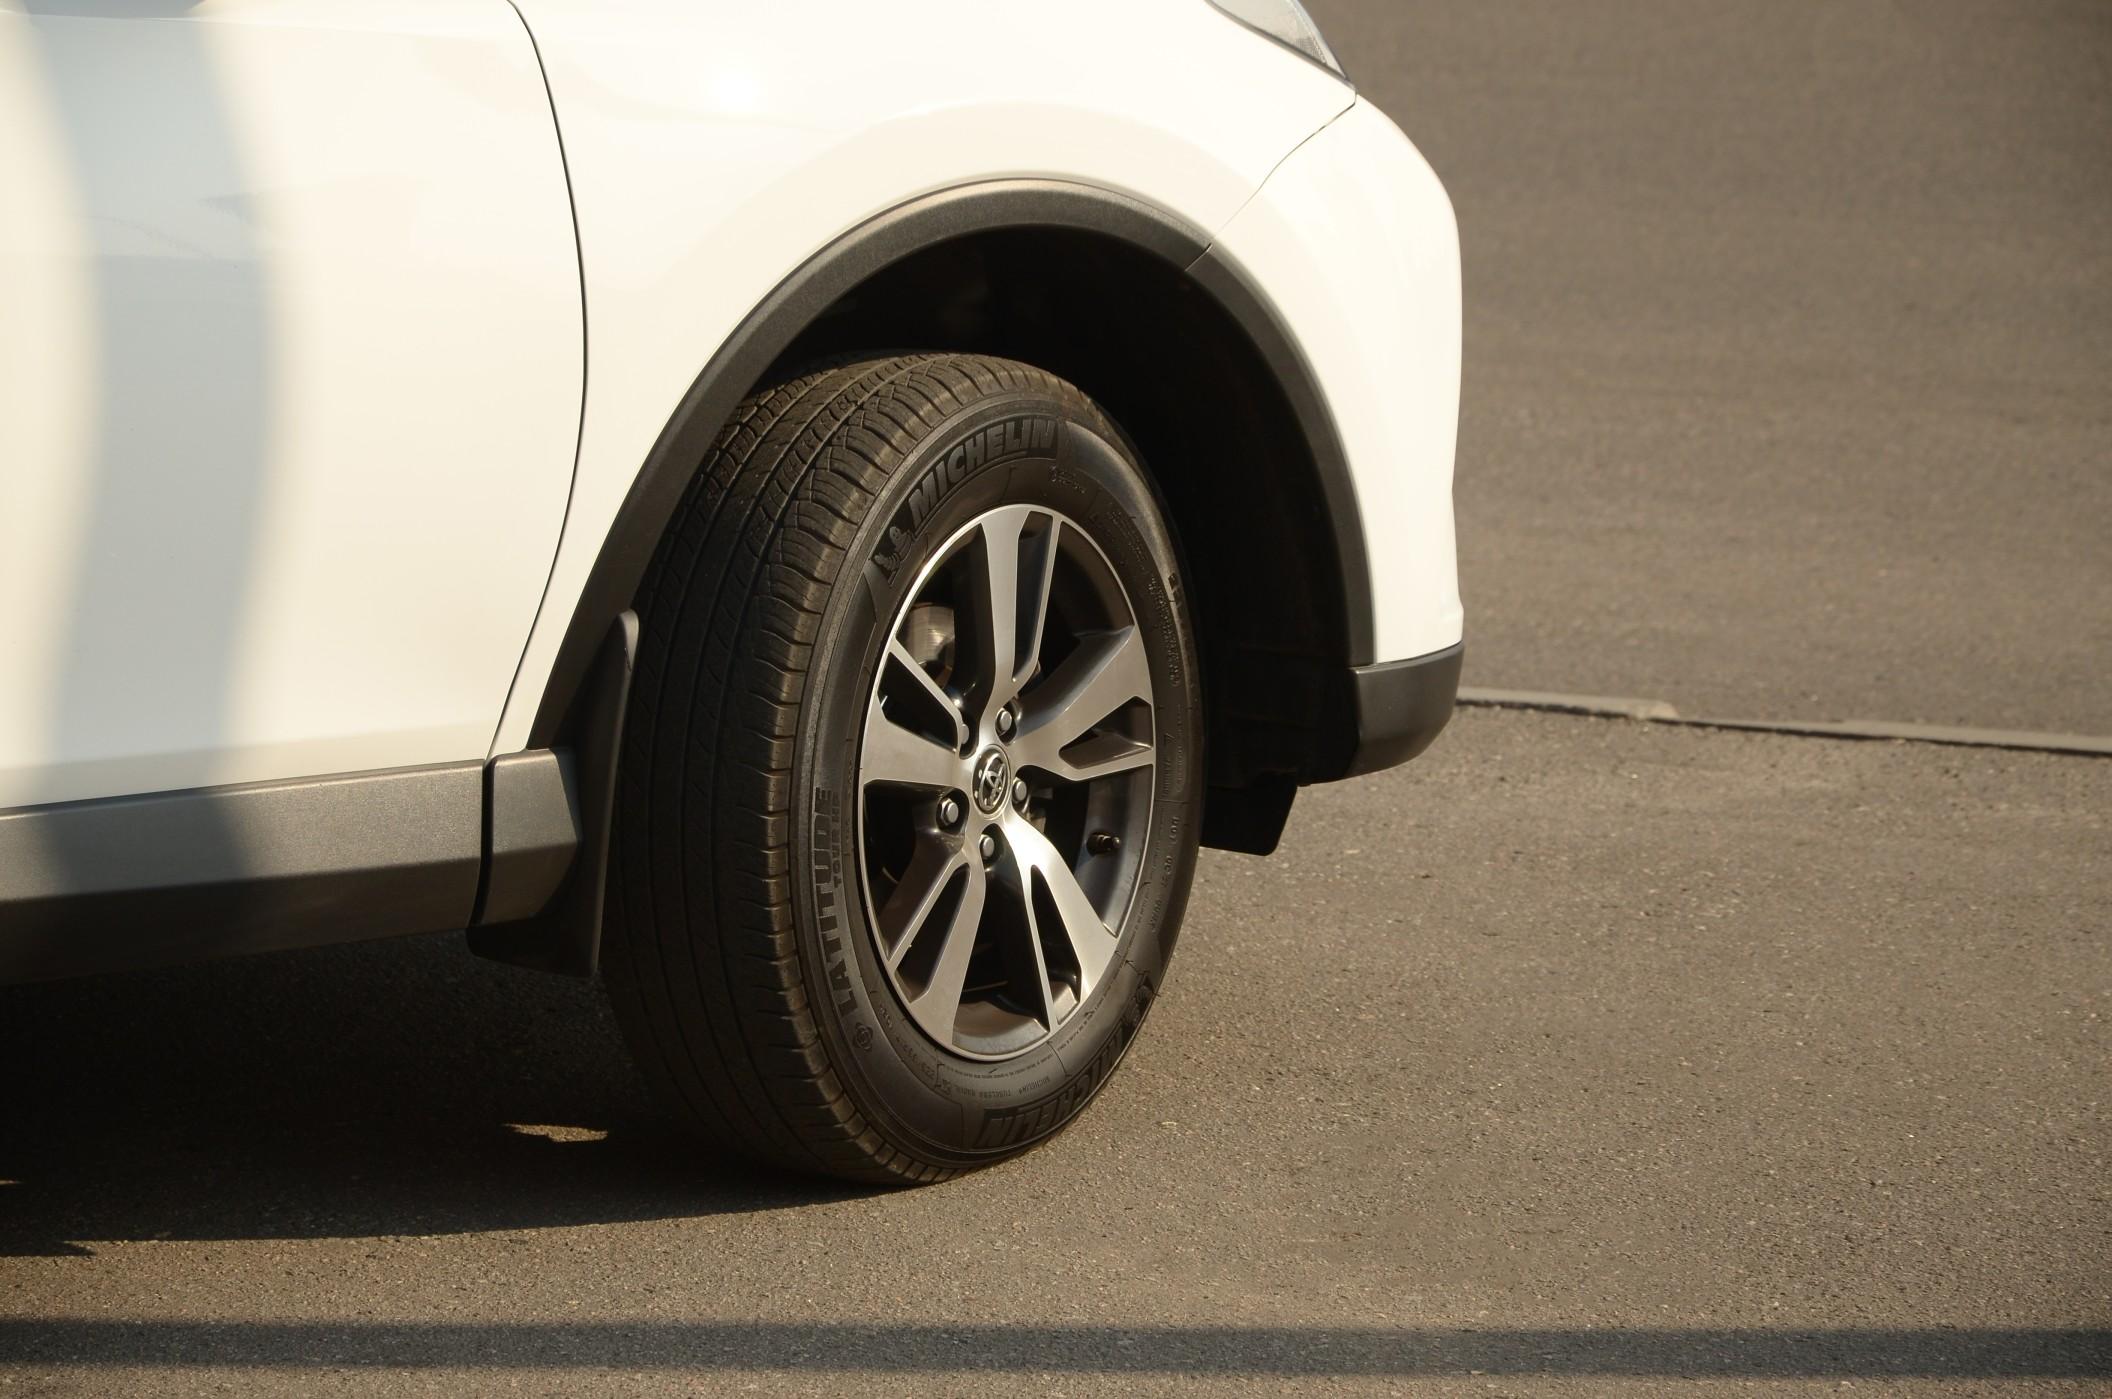 Toyota car wheel with original aluminium rims.